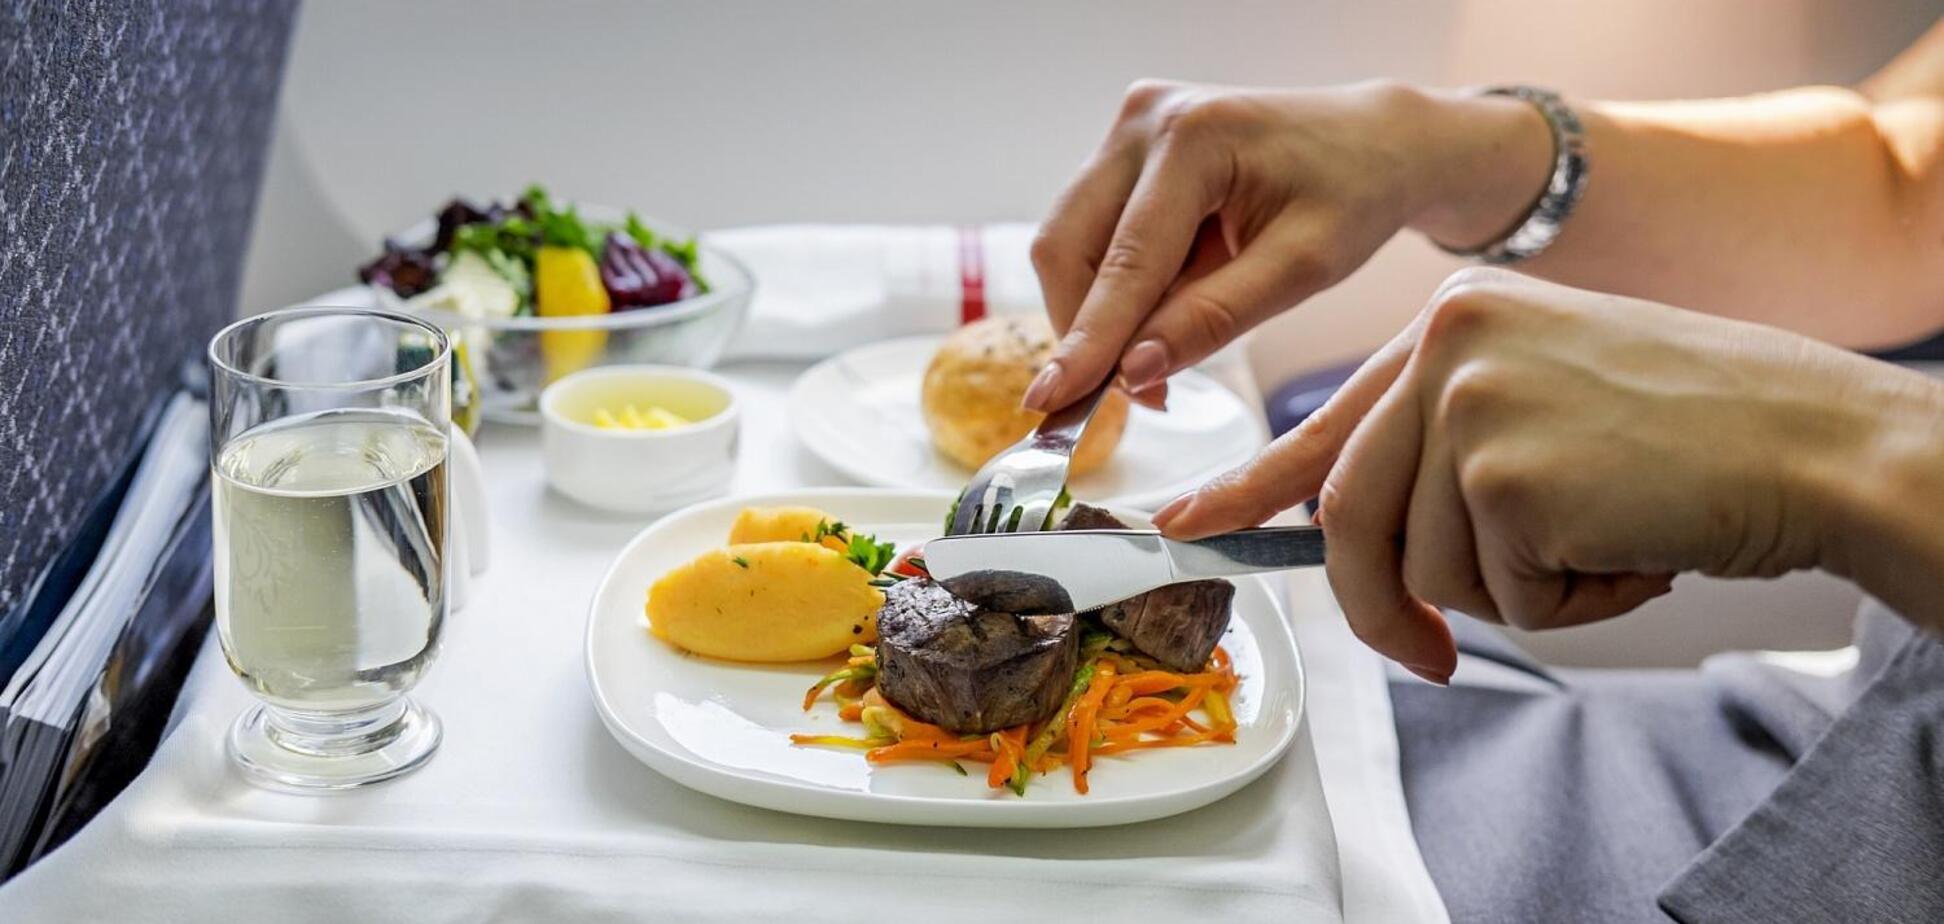 Ученые назвали главную опасность еды на борту самолета